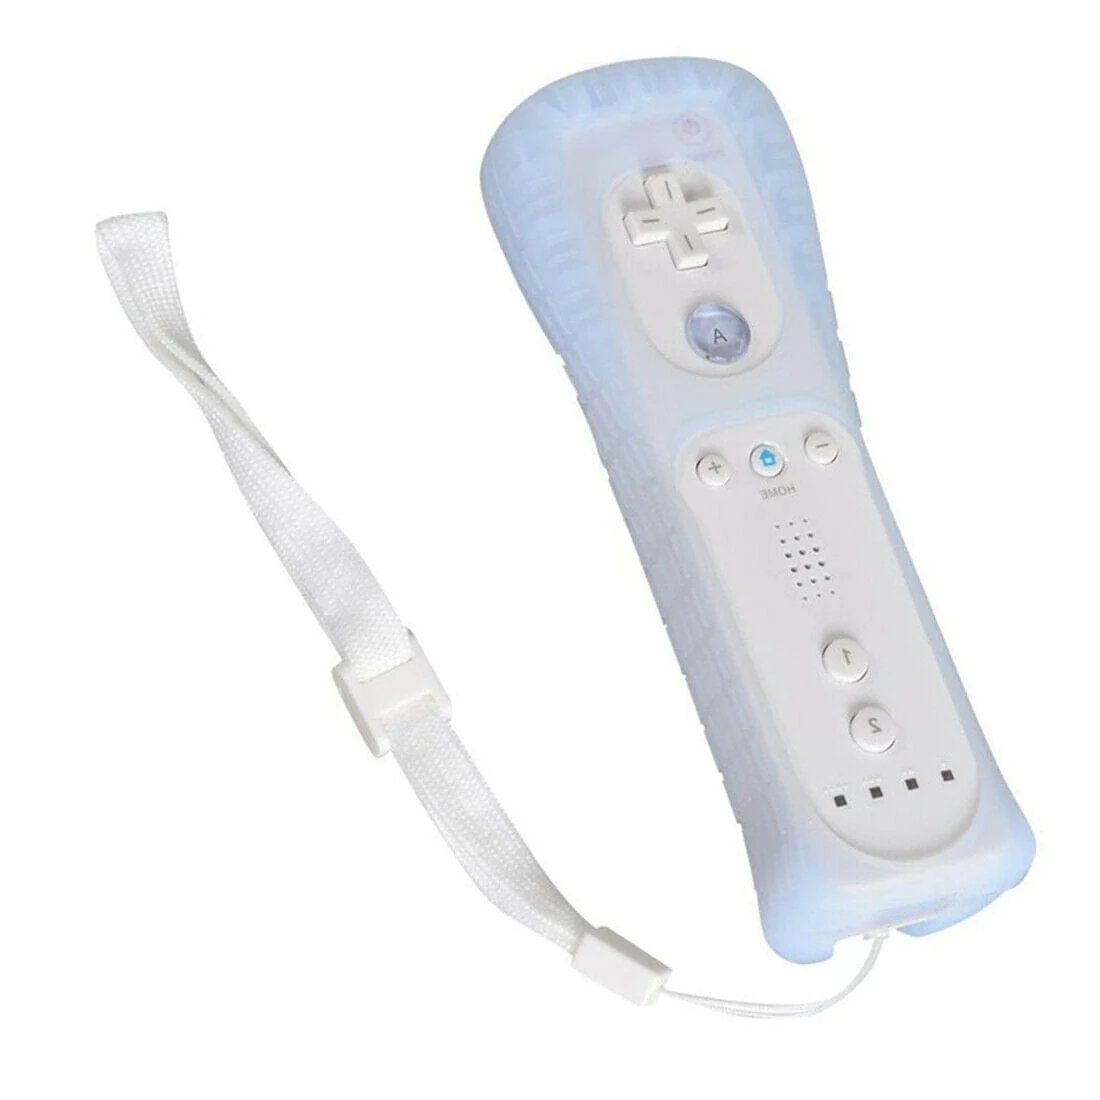 Mando Nintendo Wii / Wii U Motion Plus Inside Original